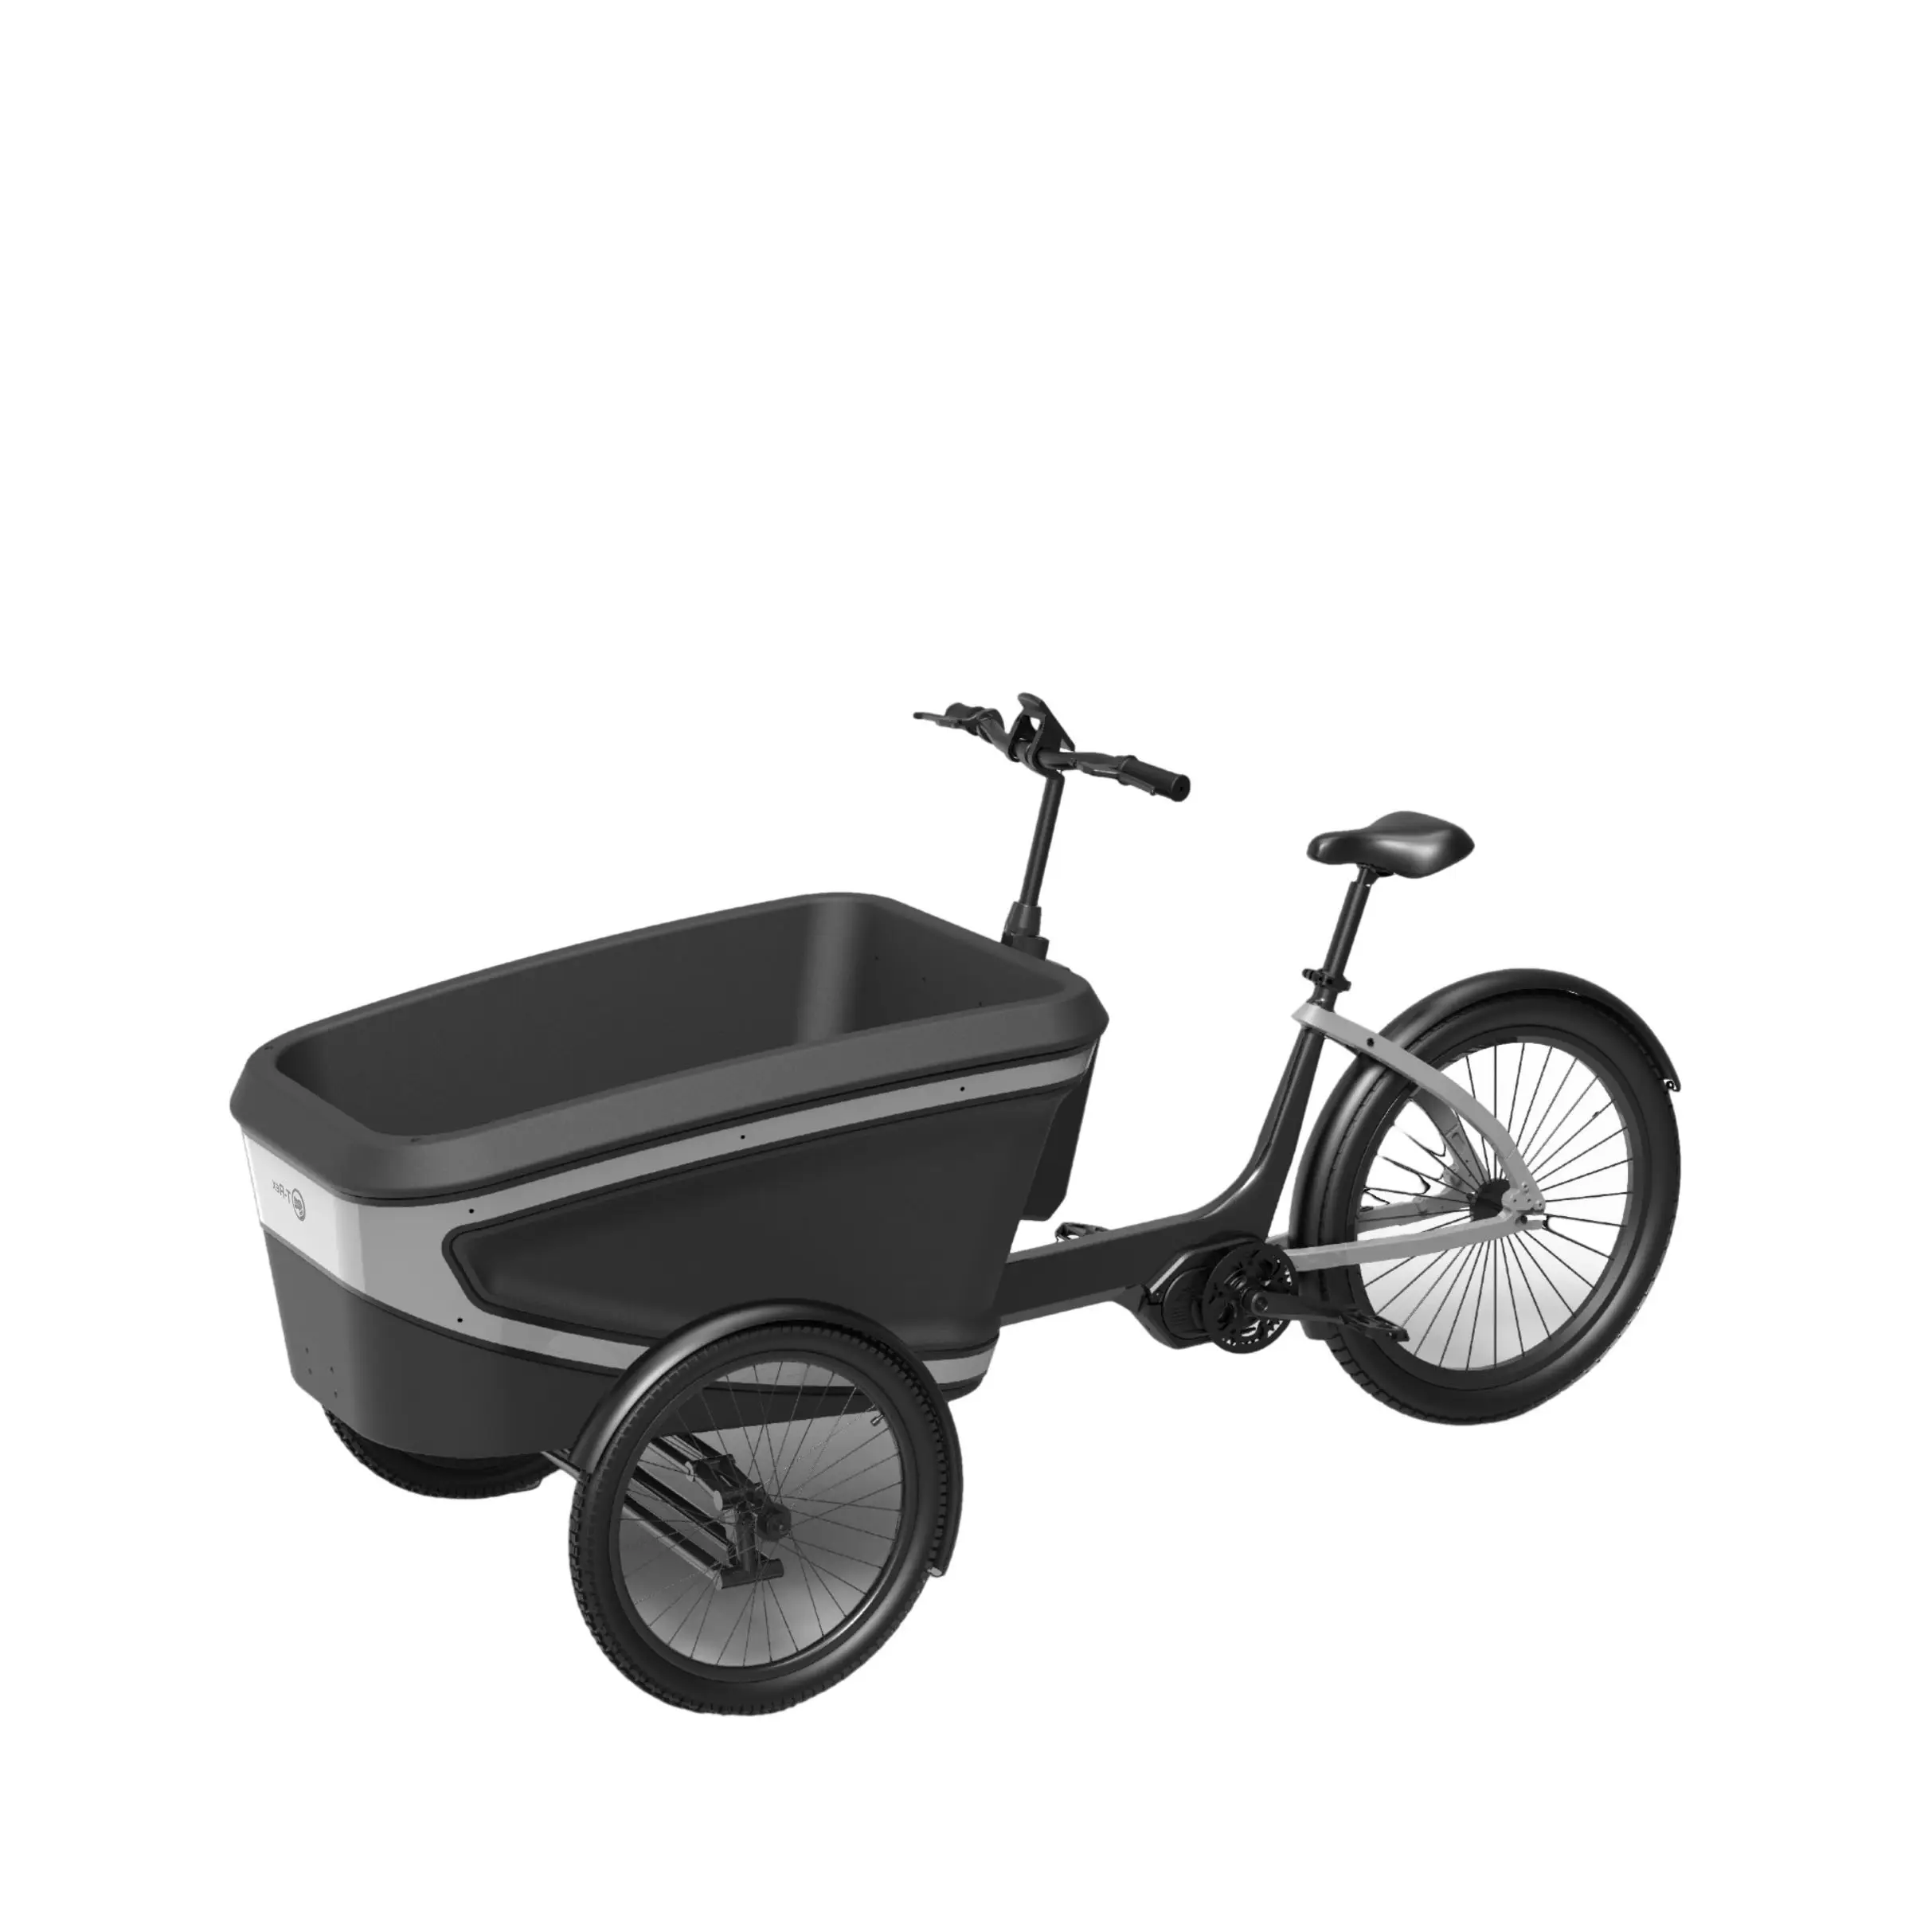 עיצוב חדש אופני מטען חשמליים אופניים חשמליים מטען משפחתיים אופניים חשמליים קופסת קצף epp למבוגרים לשאת ילדים ותינוקות